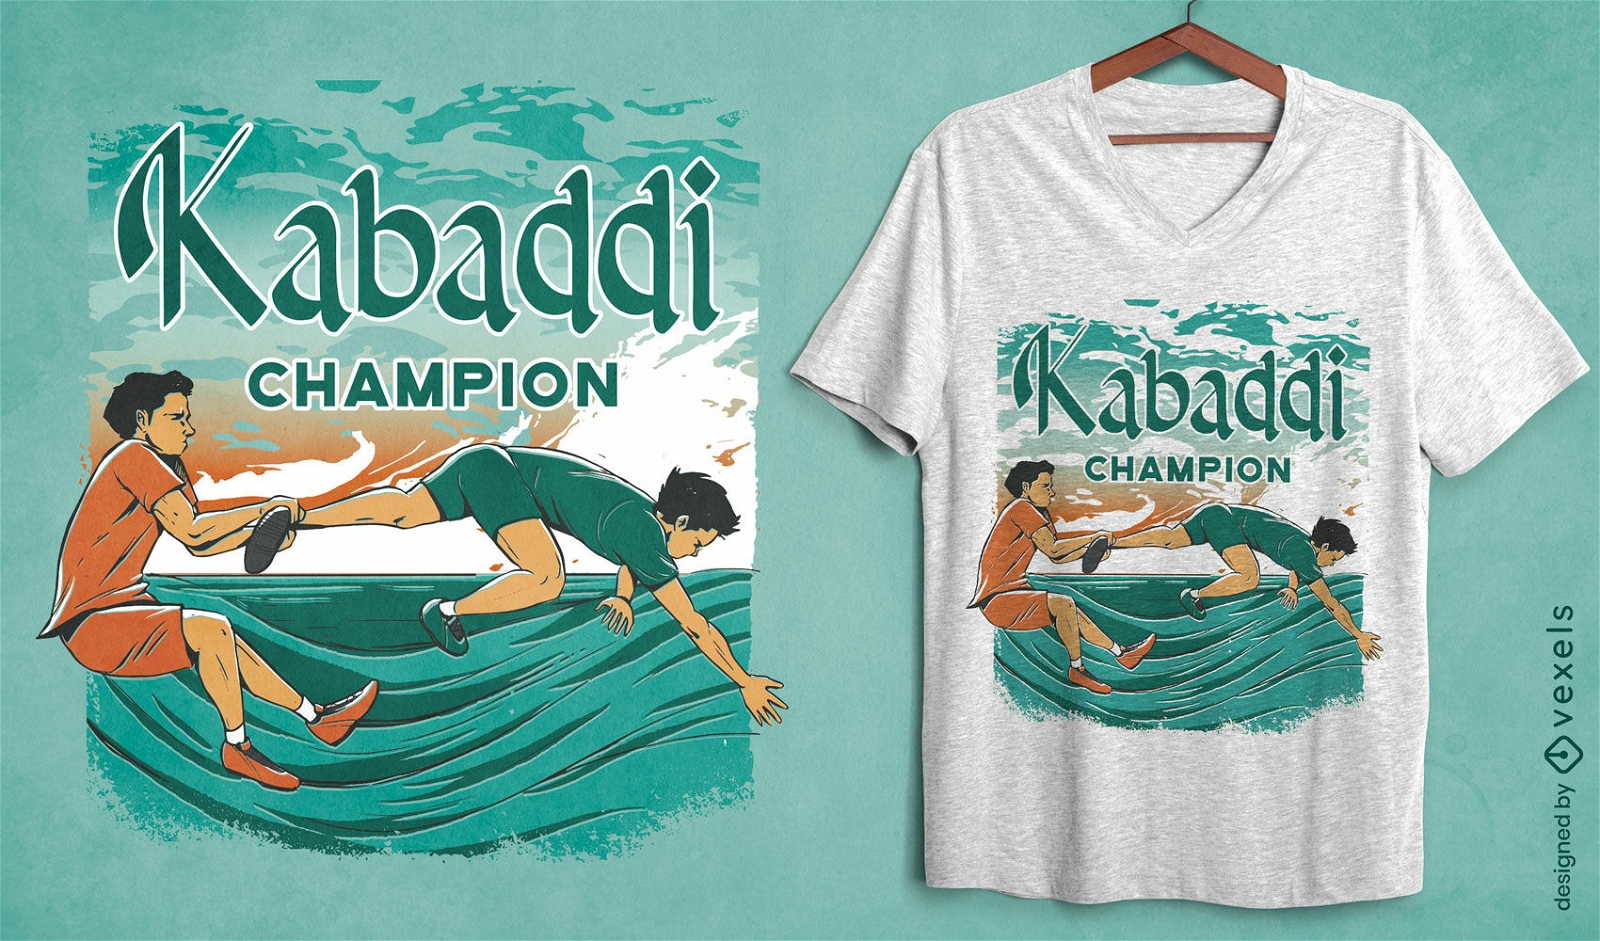 Kabaddi champion t-shirt design